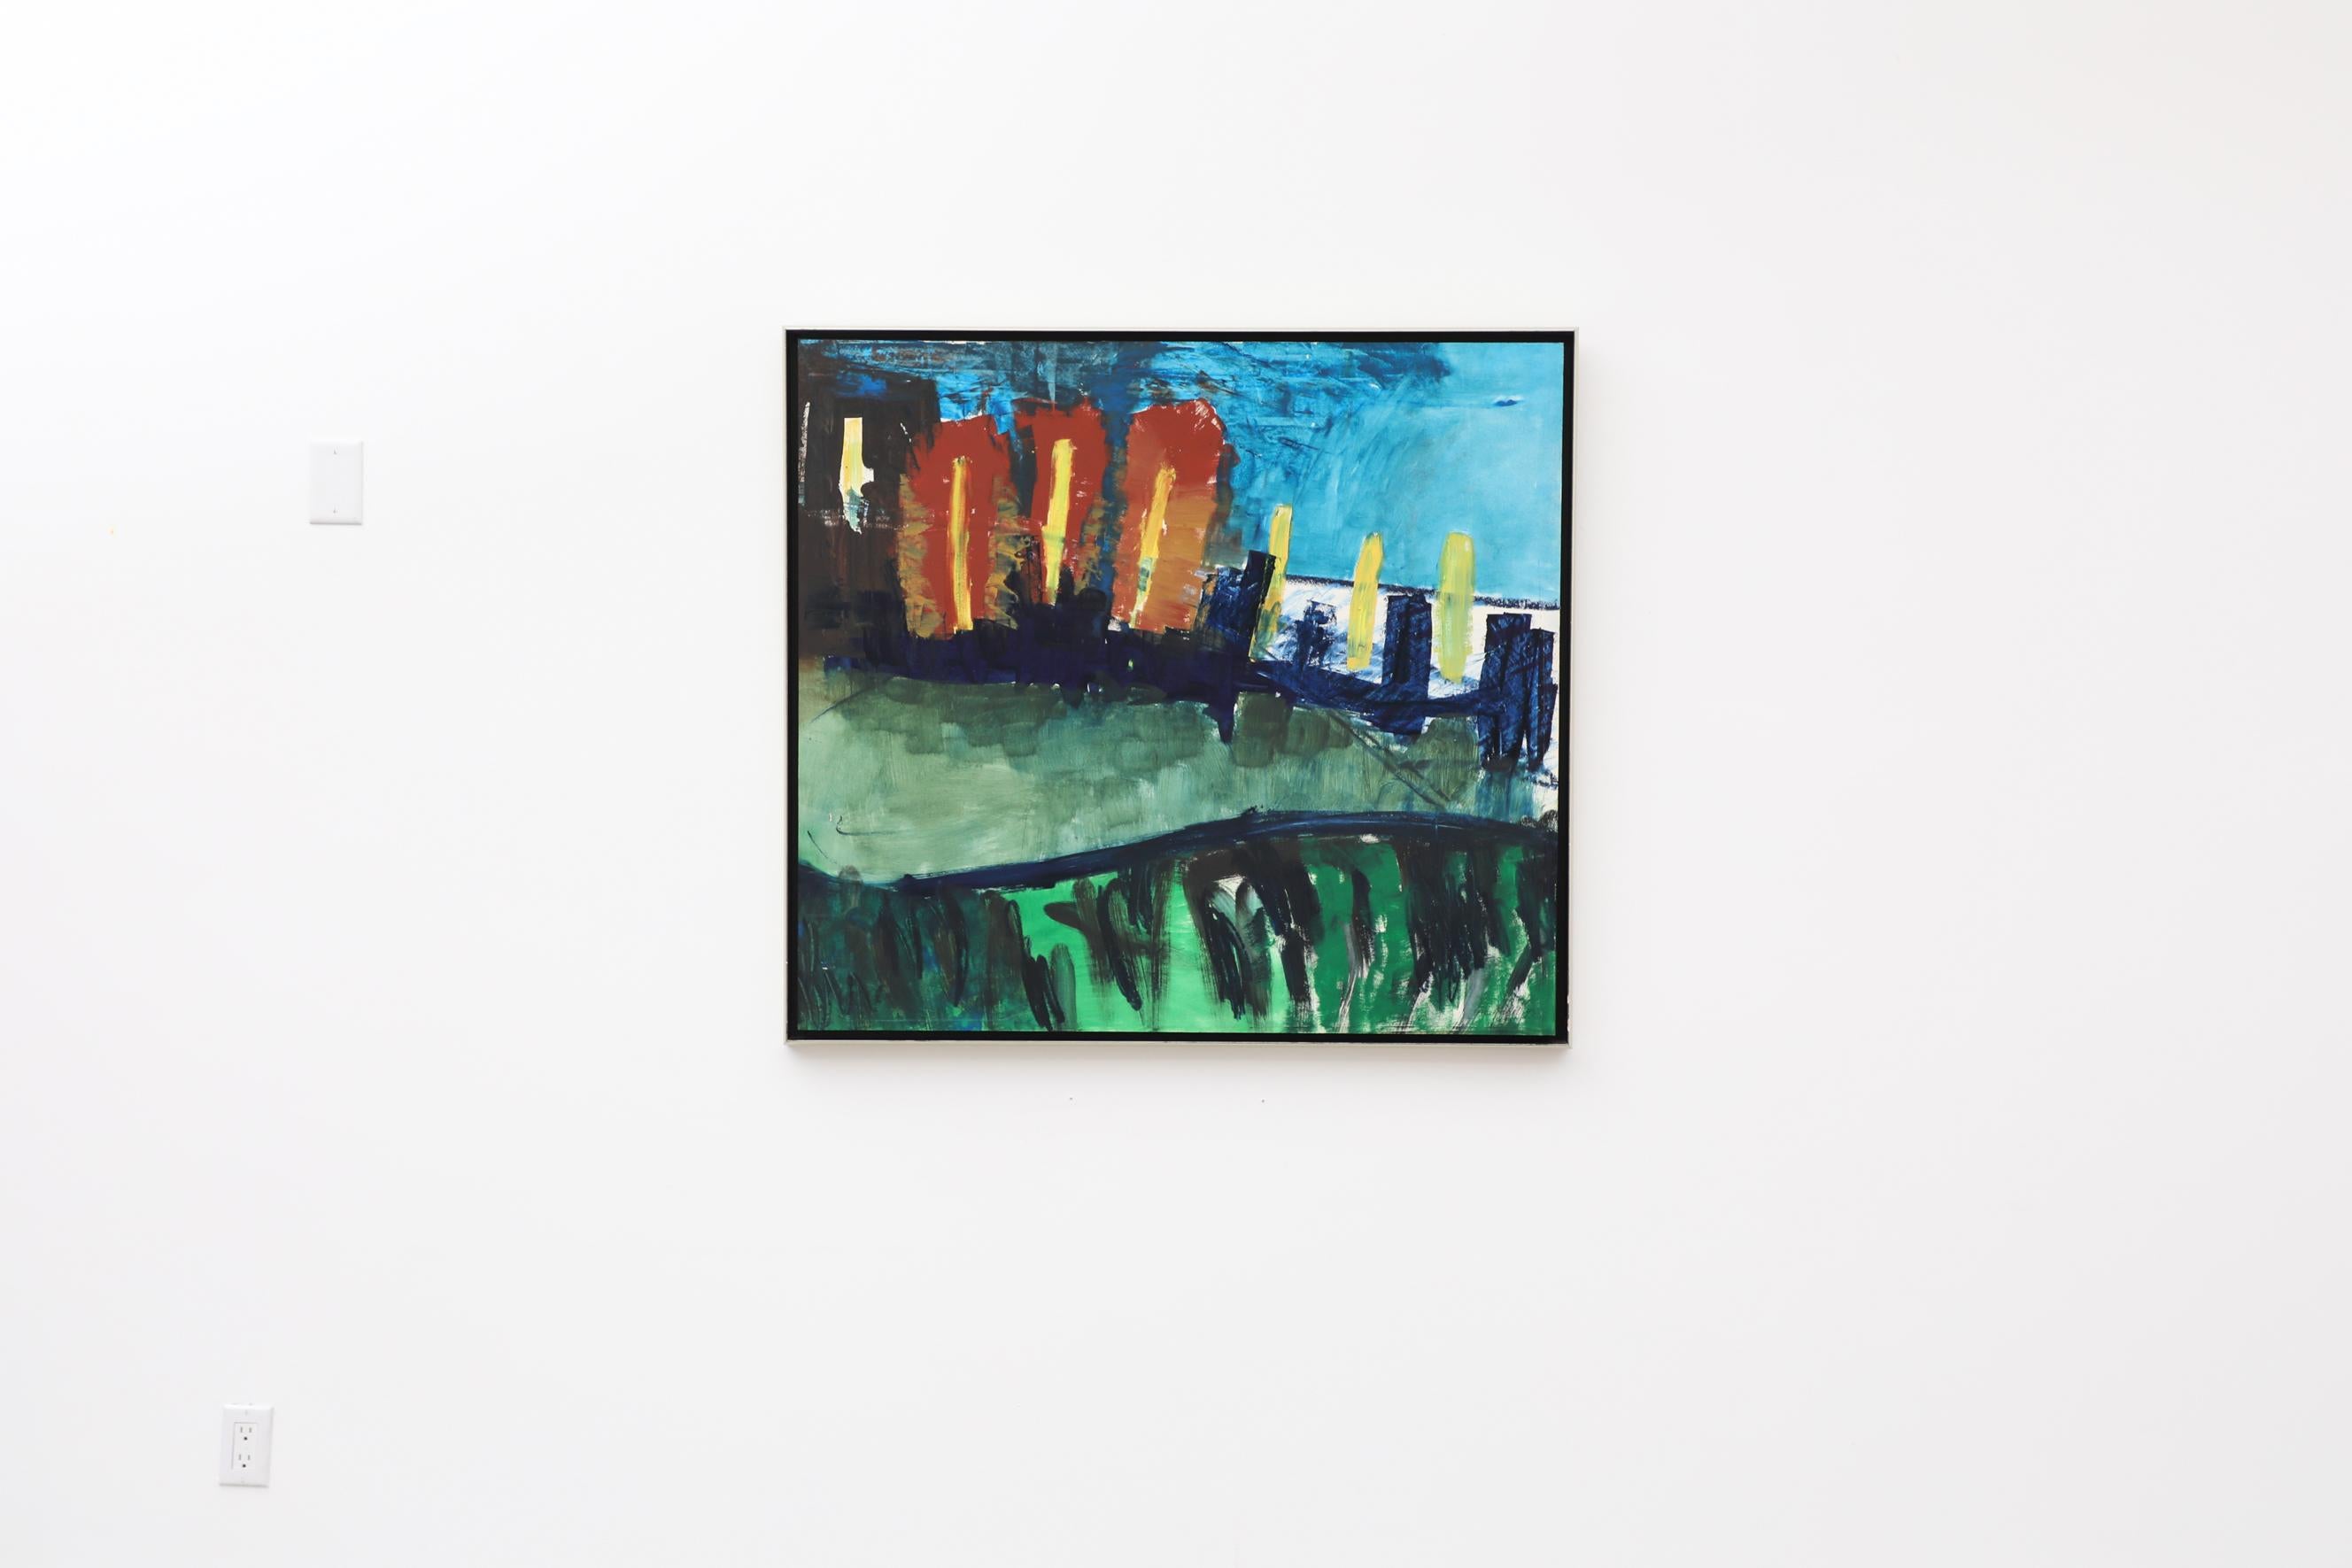 Grande peinture acrylique abstraite sur panneau de bois par Imke Plattel, 1993. Plattel est né en 1960 à Zwolle, aux Pays-Bas, et vit et travaille à Amsterdam. Cette œuvre saisissante présente une abstraction vibrante d'une scène urbaine et est